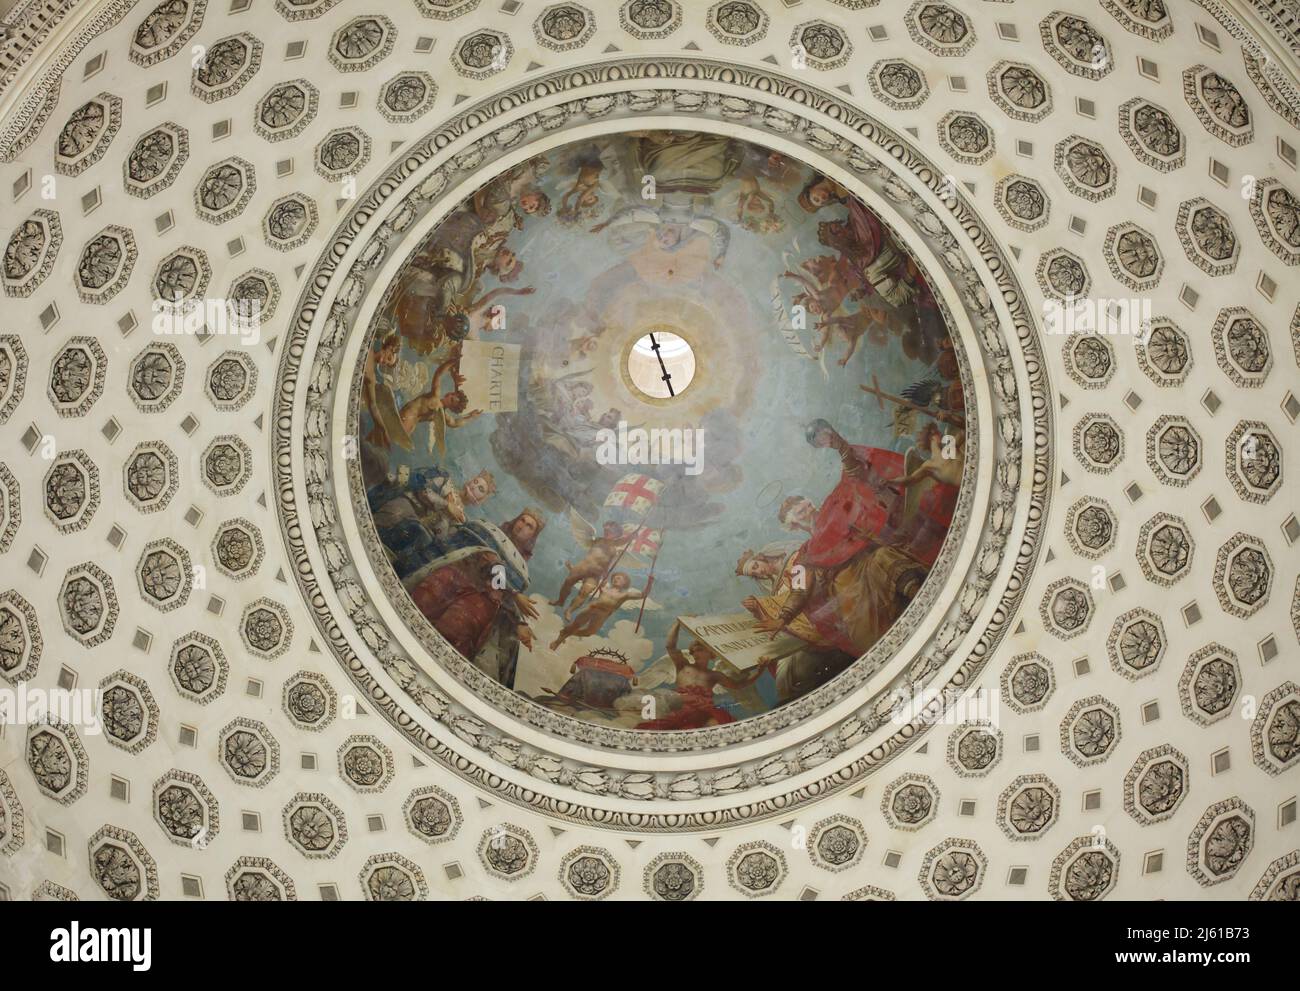 La apoteosis de Saint Genevieve representada en el fresco diseñado por el pintor francés Antoine-Jean Gros (1811–1834) dentro de la cúpula principal del Panteón diseñado por el arquitecto francés Jacques-Germain Soufflot (1758-1790) en París, Francia. Foto de stock